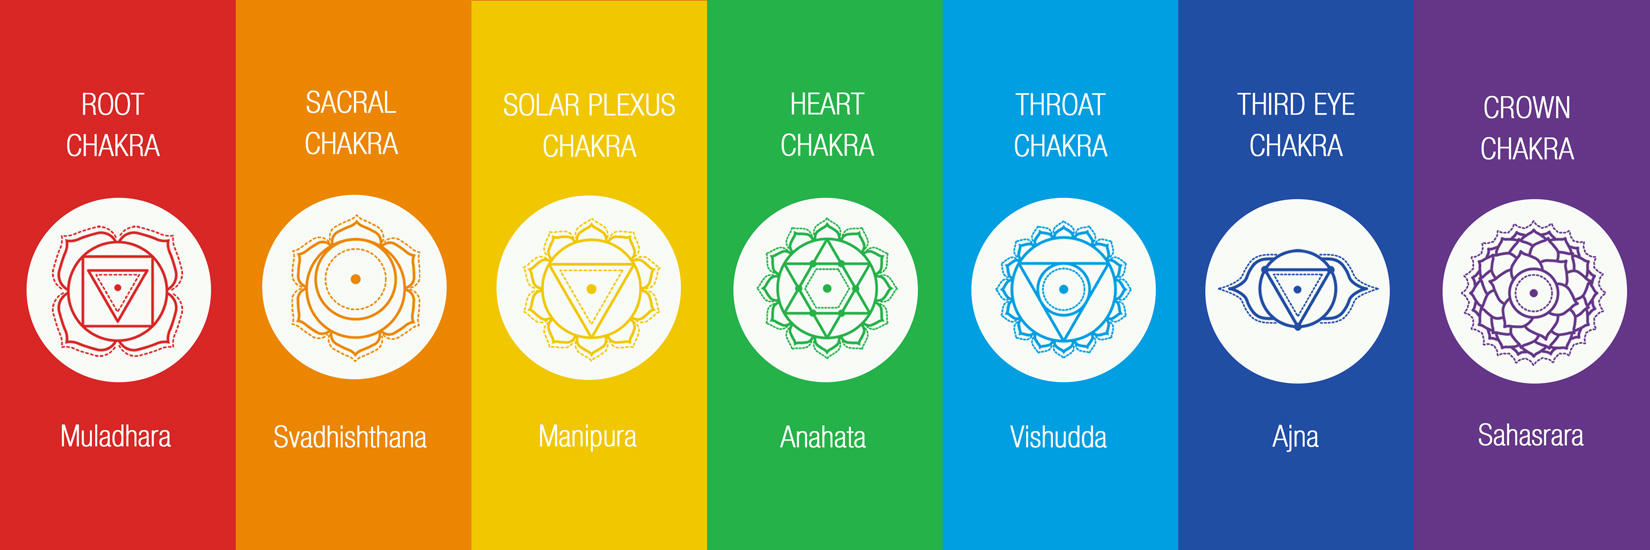 the seven main chakras